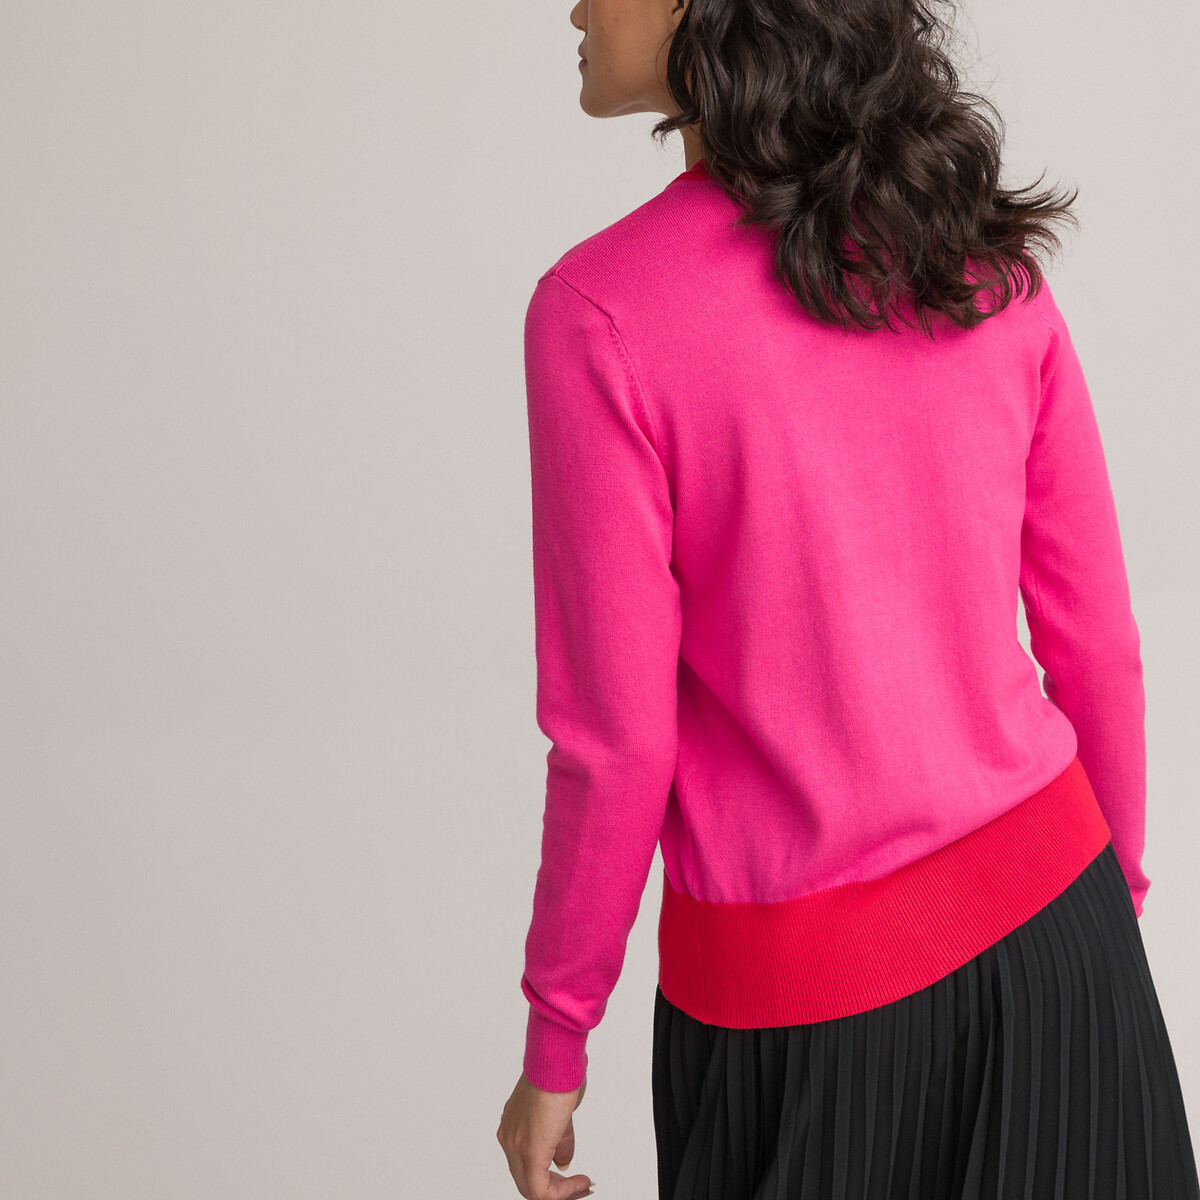 Пуловер LA REDOUTE COLLECTIONS Пуловер Двухцветный с круглым вырезом из тонкого трикотажа S розовый, размер S - фото 4